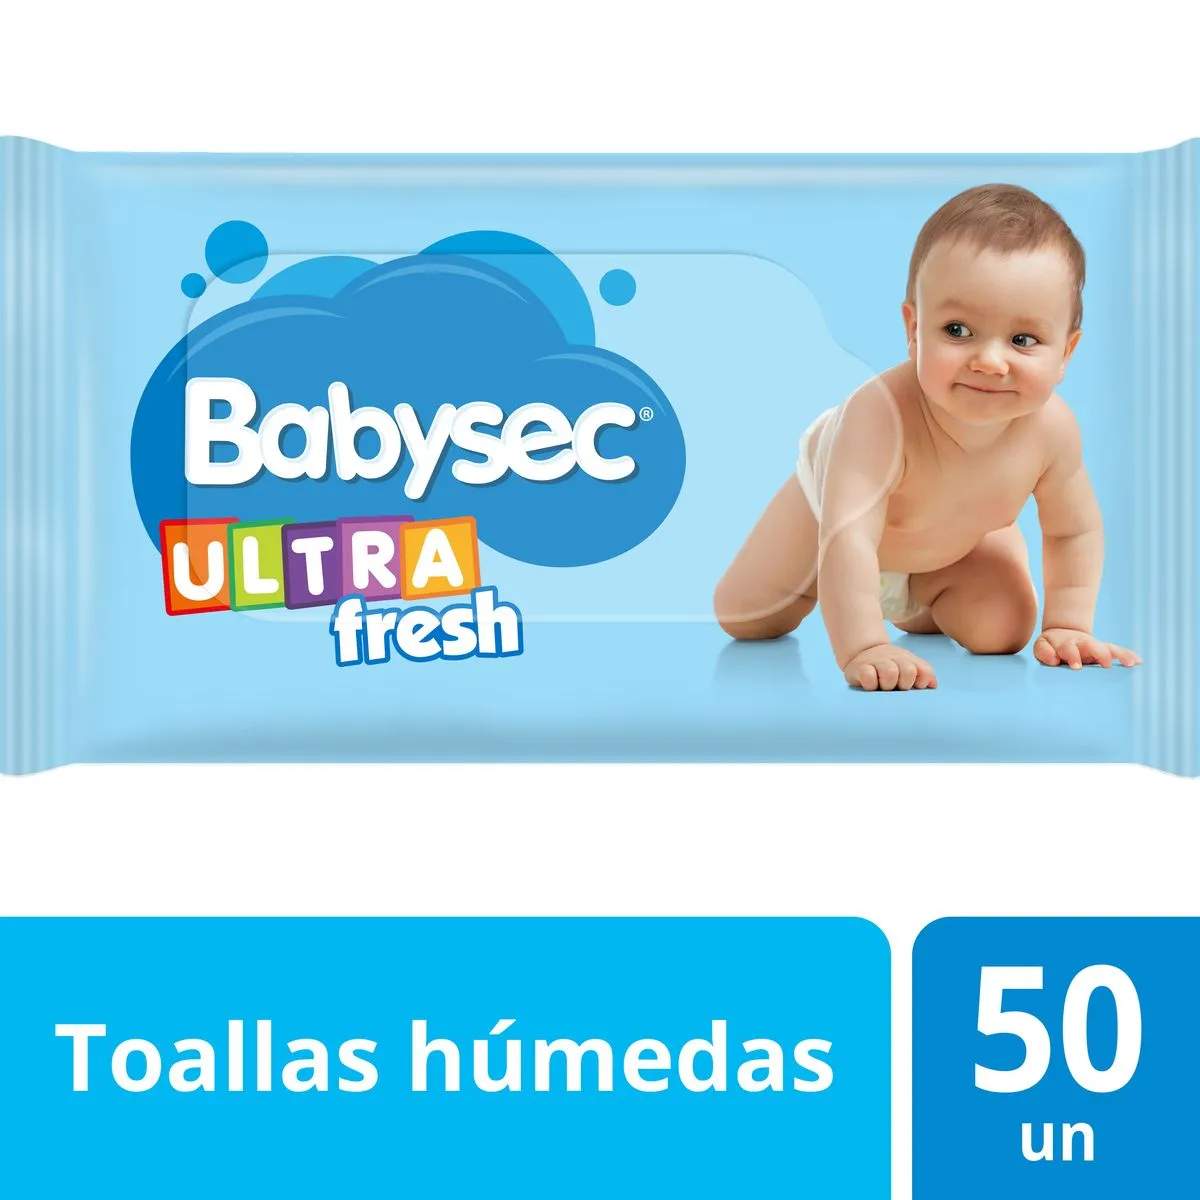 Imagen 2 de 2 de Toallitas Húmedas Babysec Bebe Ultra Fresh x 50 unidades